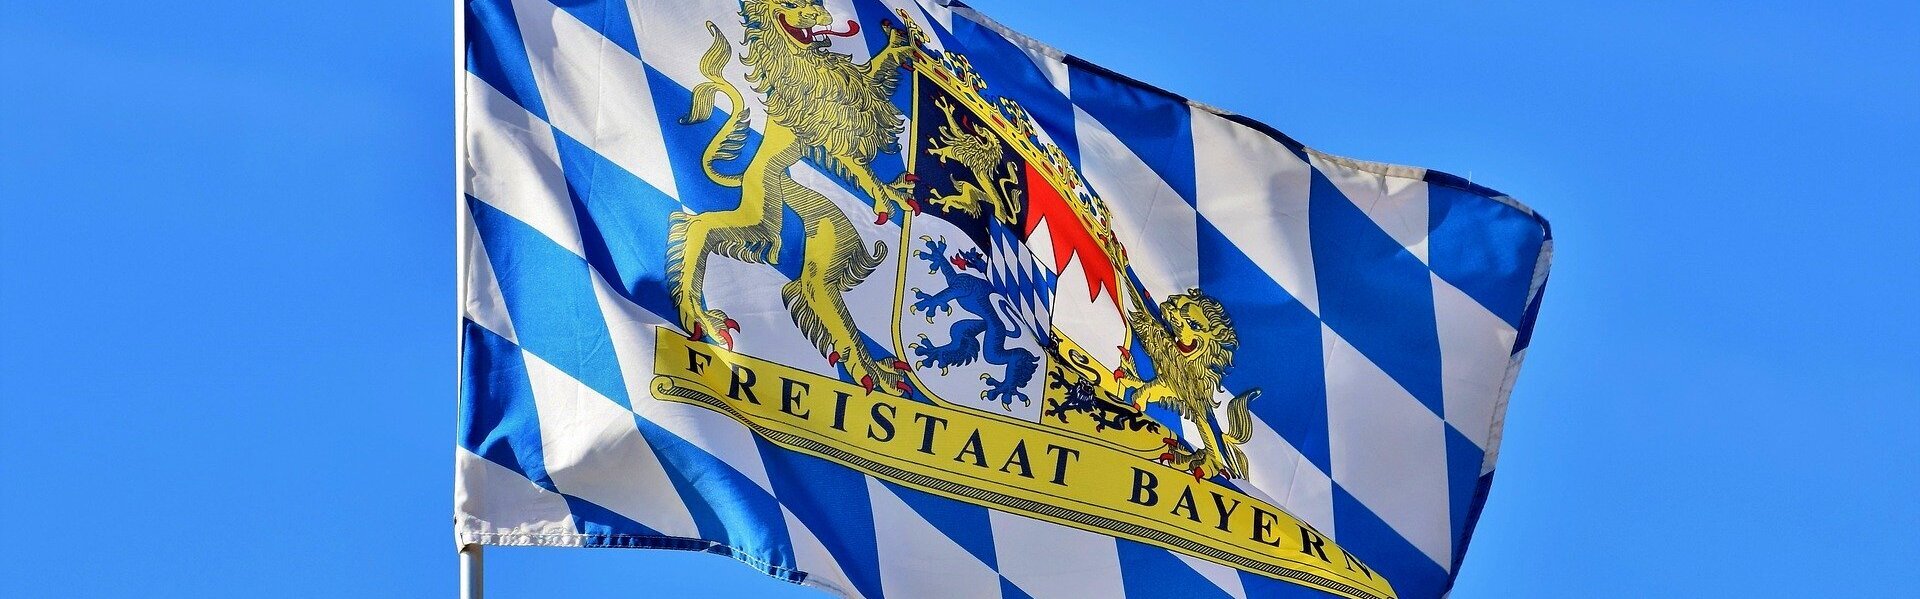 Das Bild zeigt die bayerische Flagge